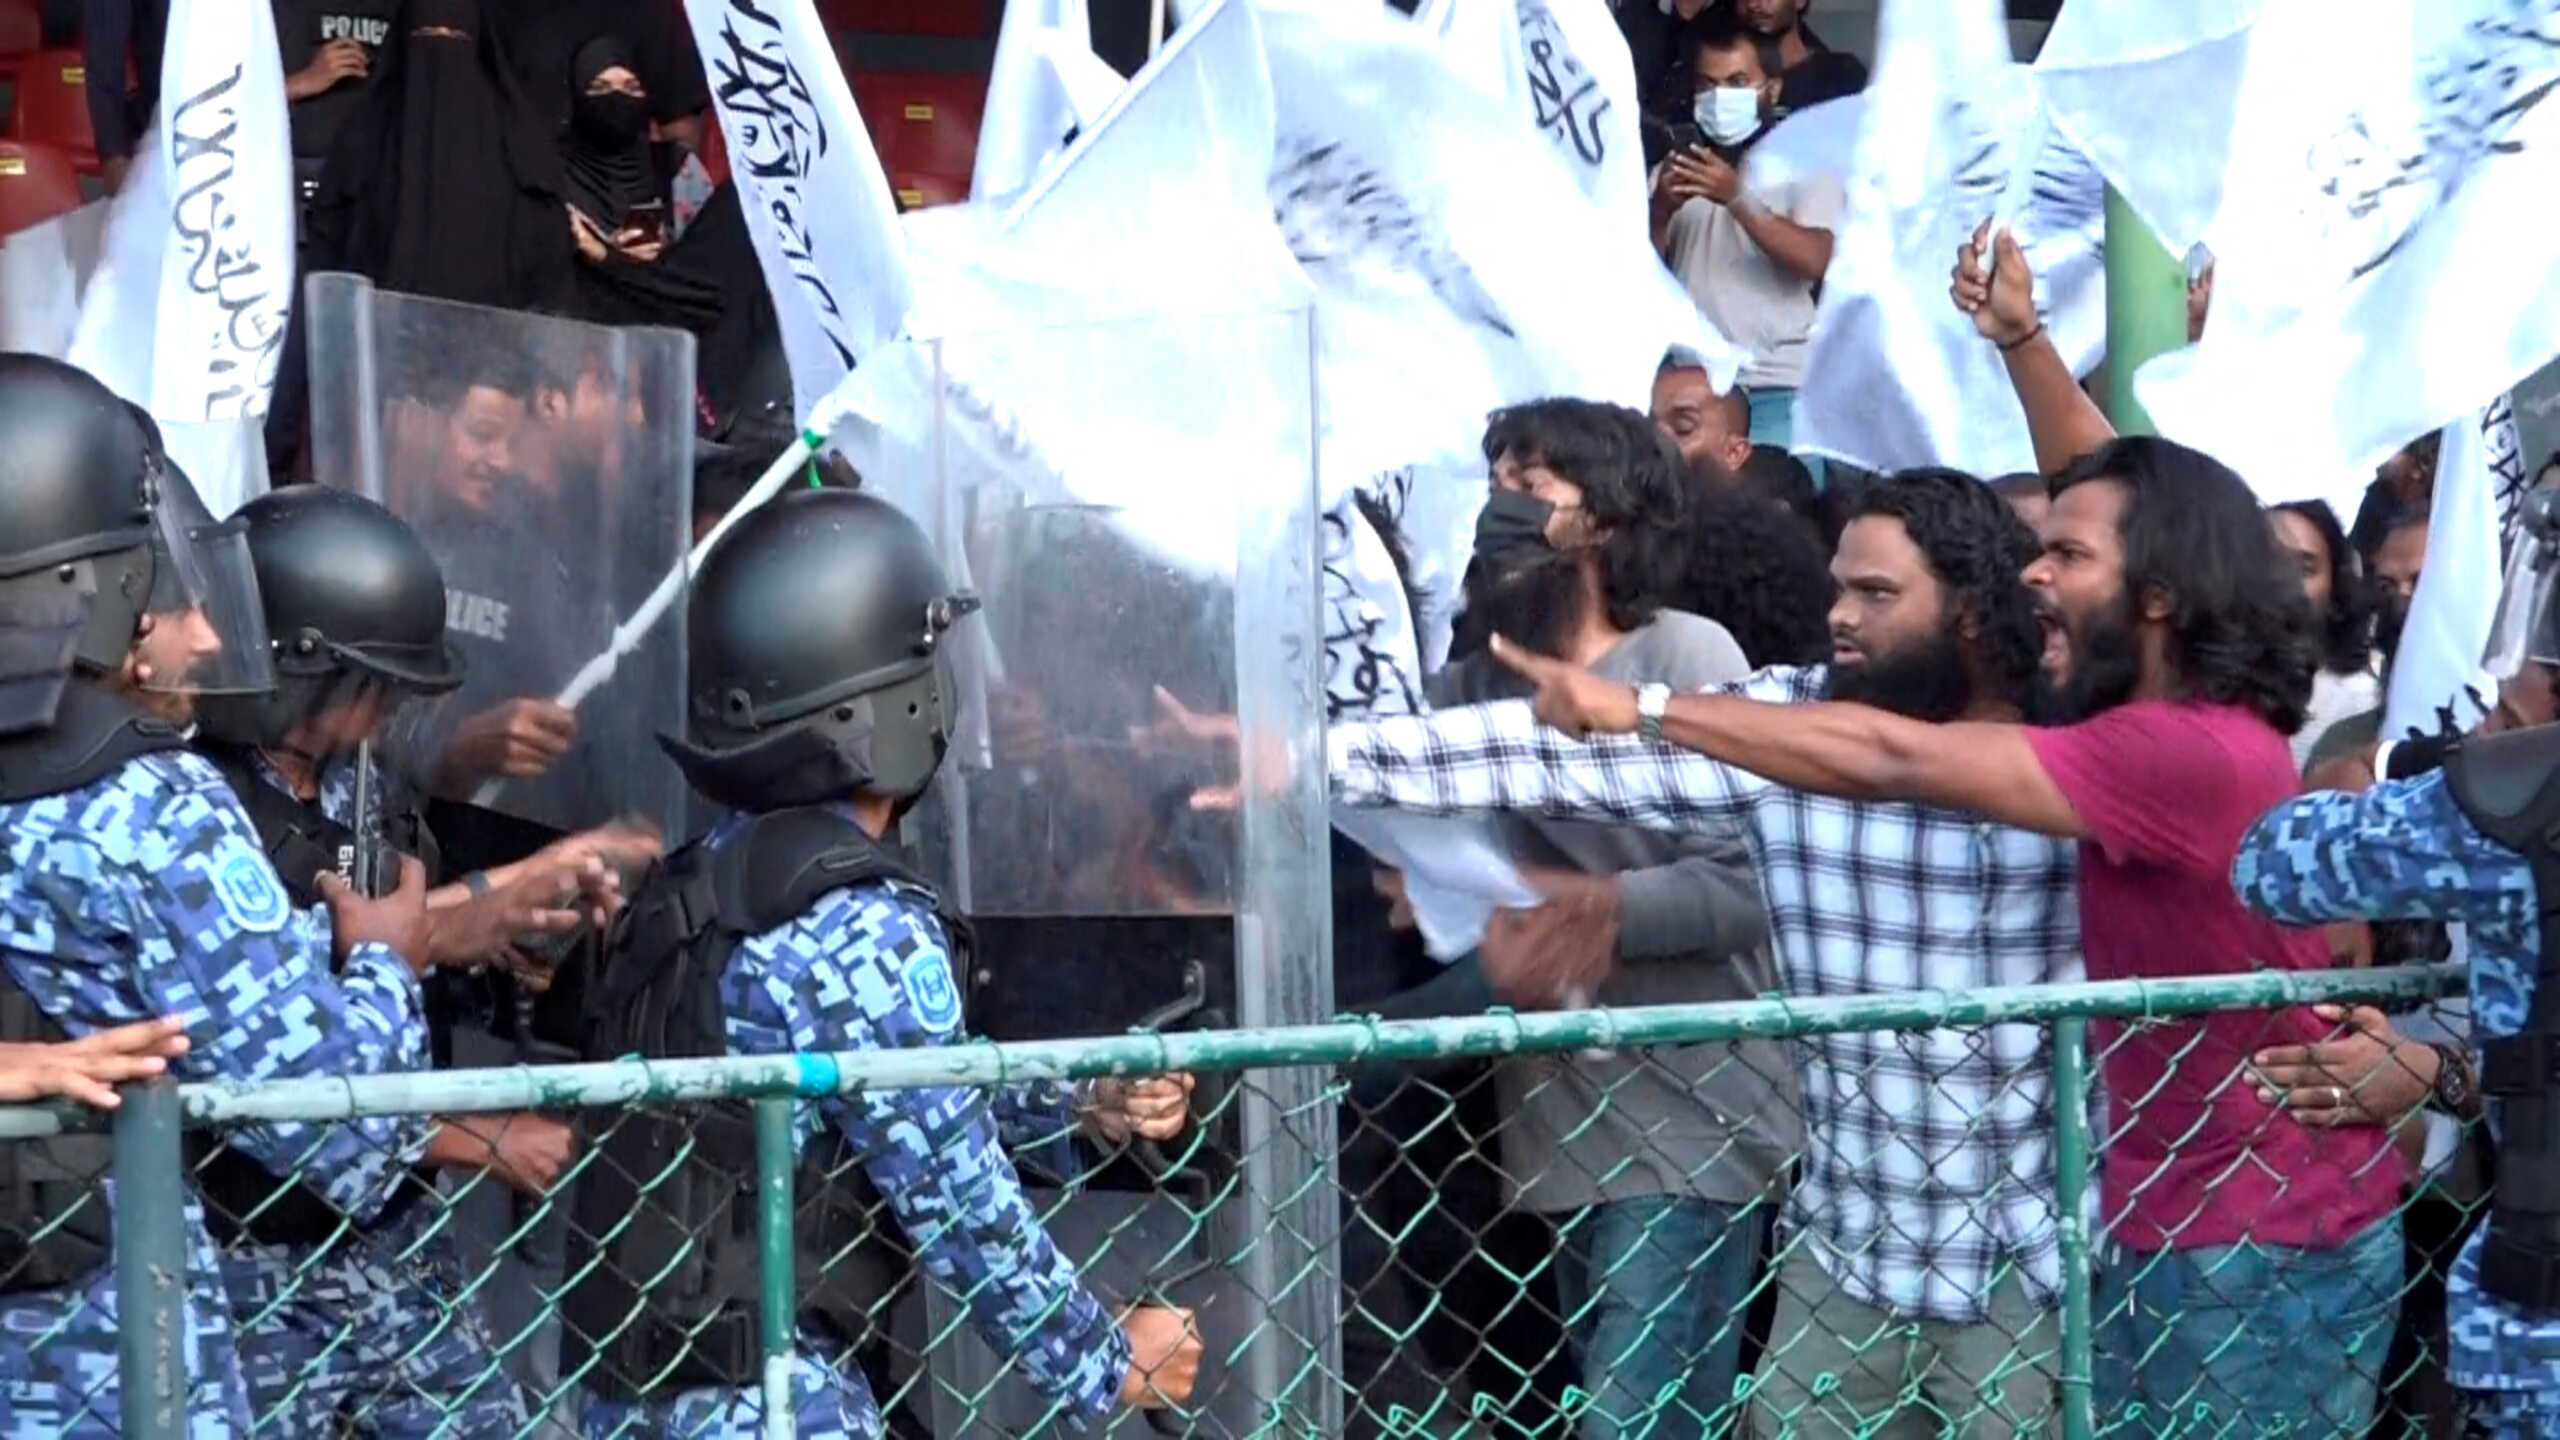 Δακρυγόνα και συλλήψεις Μουσουλμάνων σε εκδήλωση για γιόγκα στις Μαλδίβες